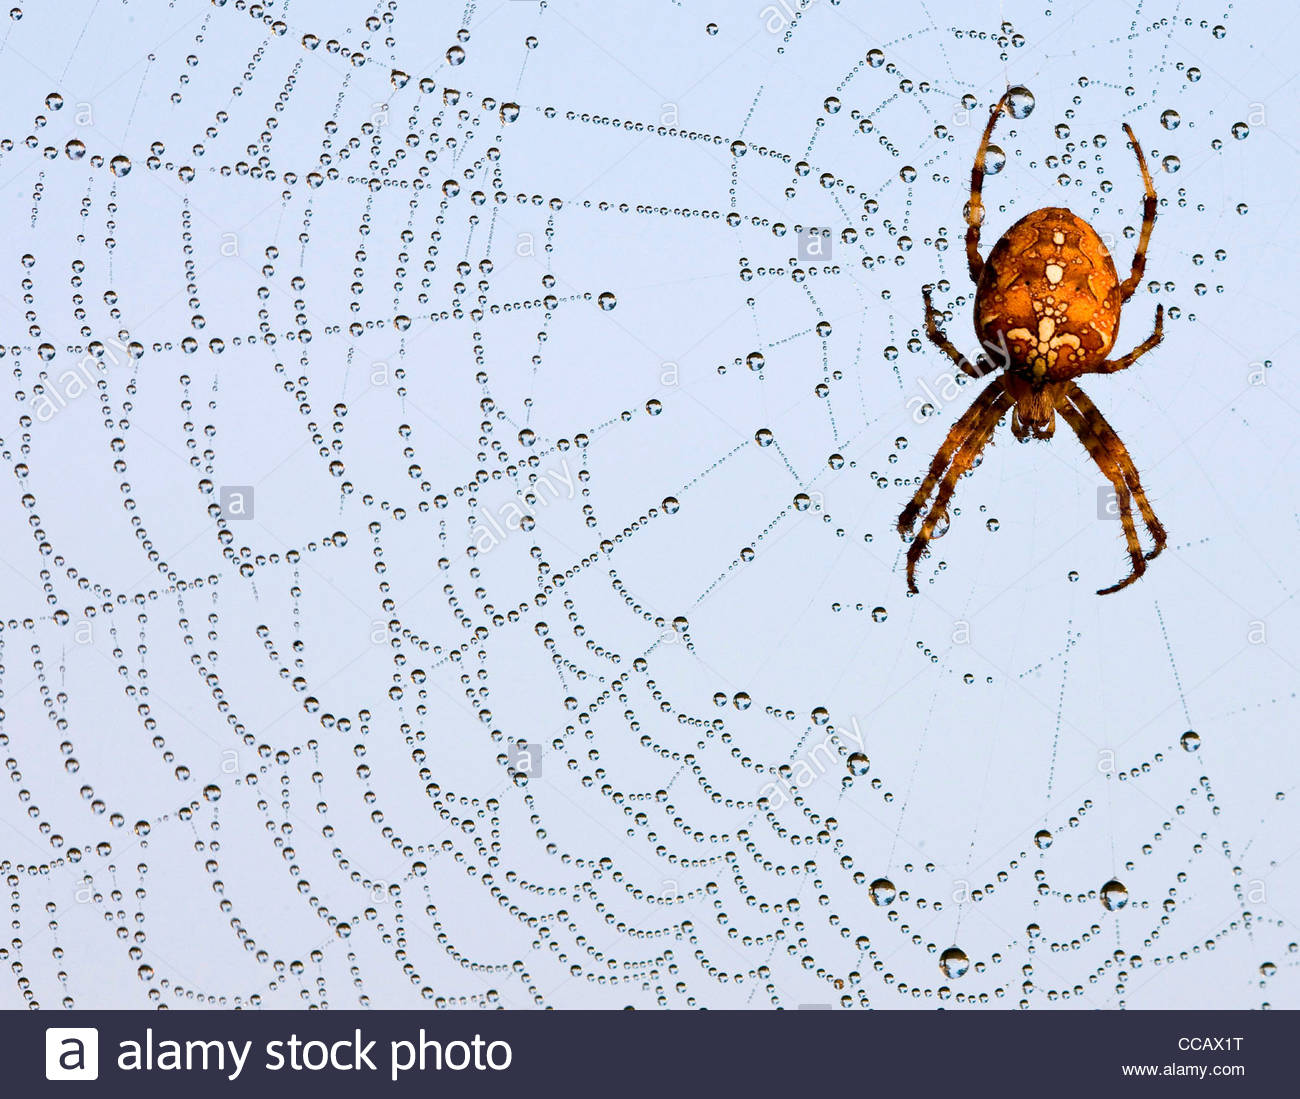 epa02381188_A_European_garden_spider_Ara